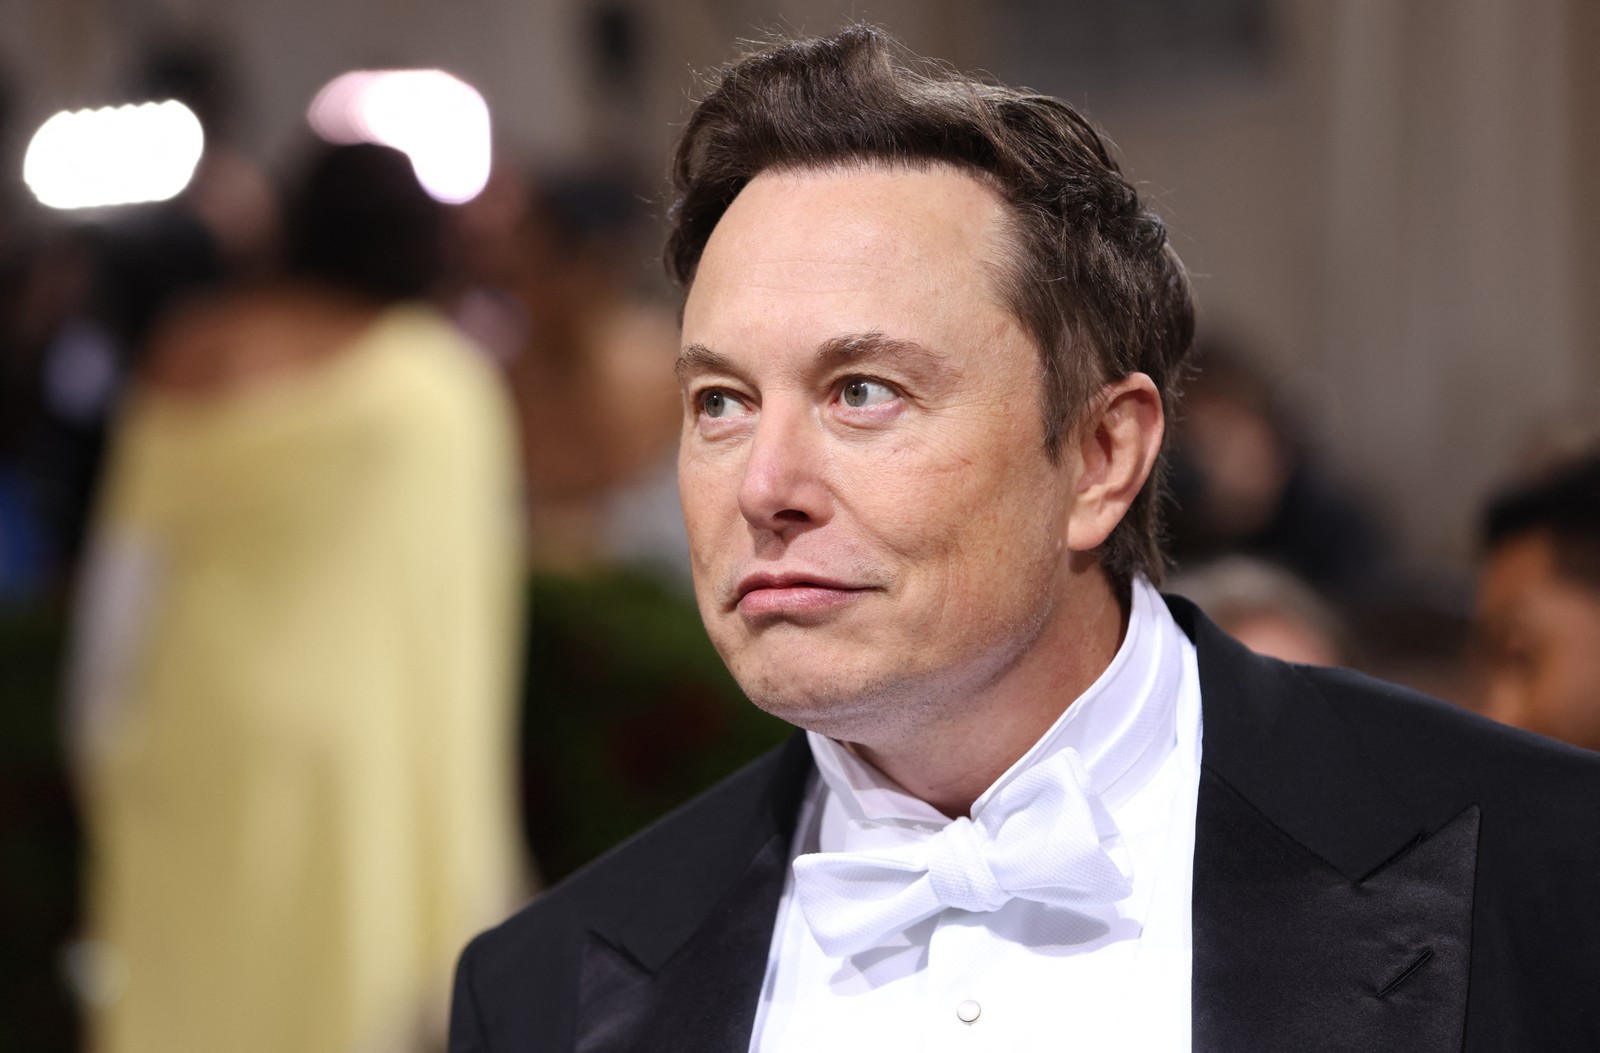 Musk esteve no Met Gala em 2018. Embora seja o homem mais rico do mundo, esse ingresso ele não pode comprar: só podem comparecer os convidados pelos organizadoresREUTERS